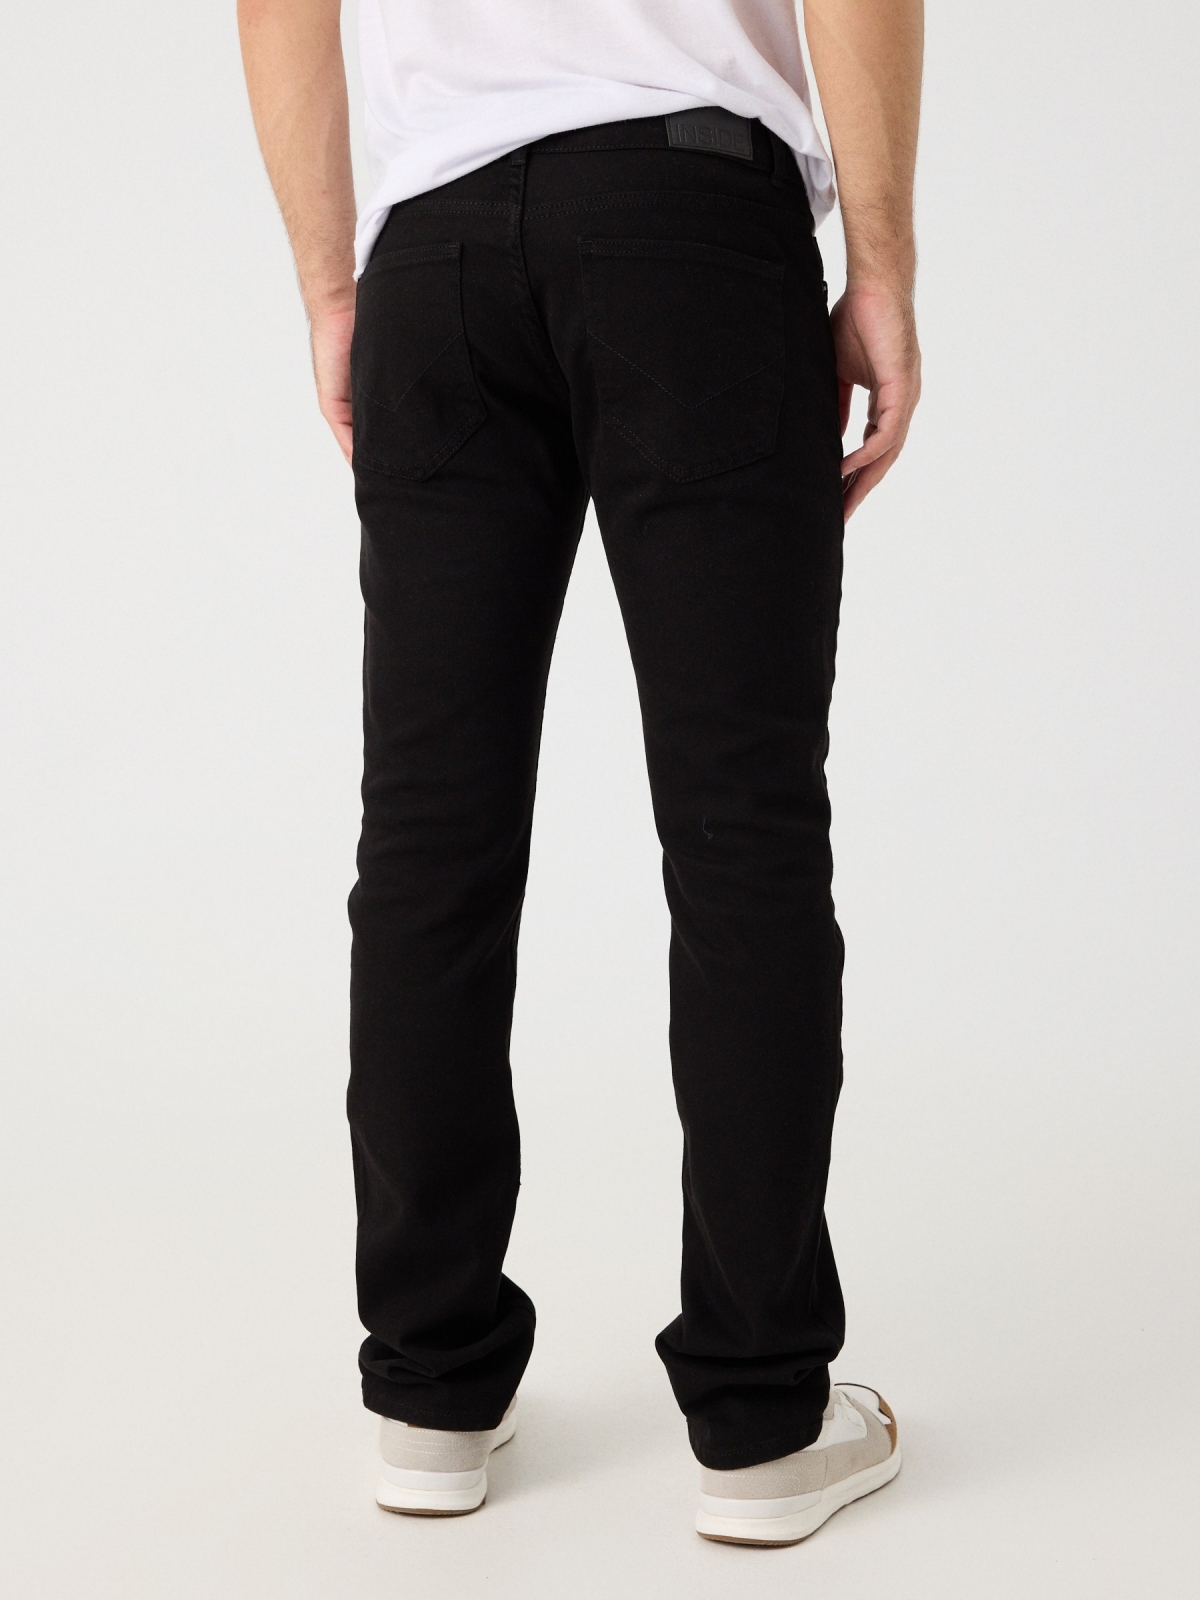 Pantalón regular cinco bolsillos negro vista media trasera